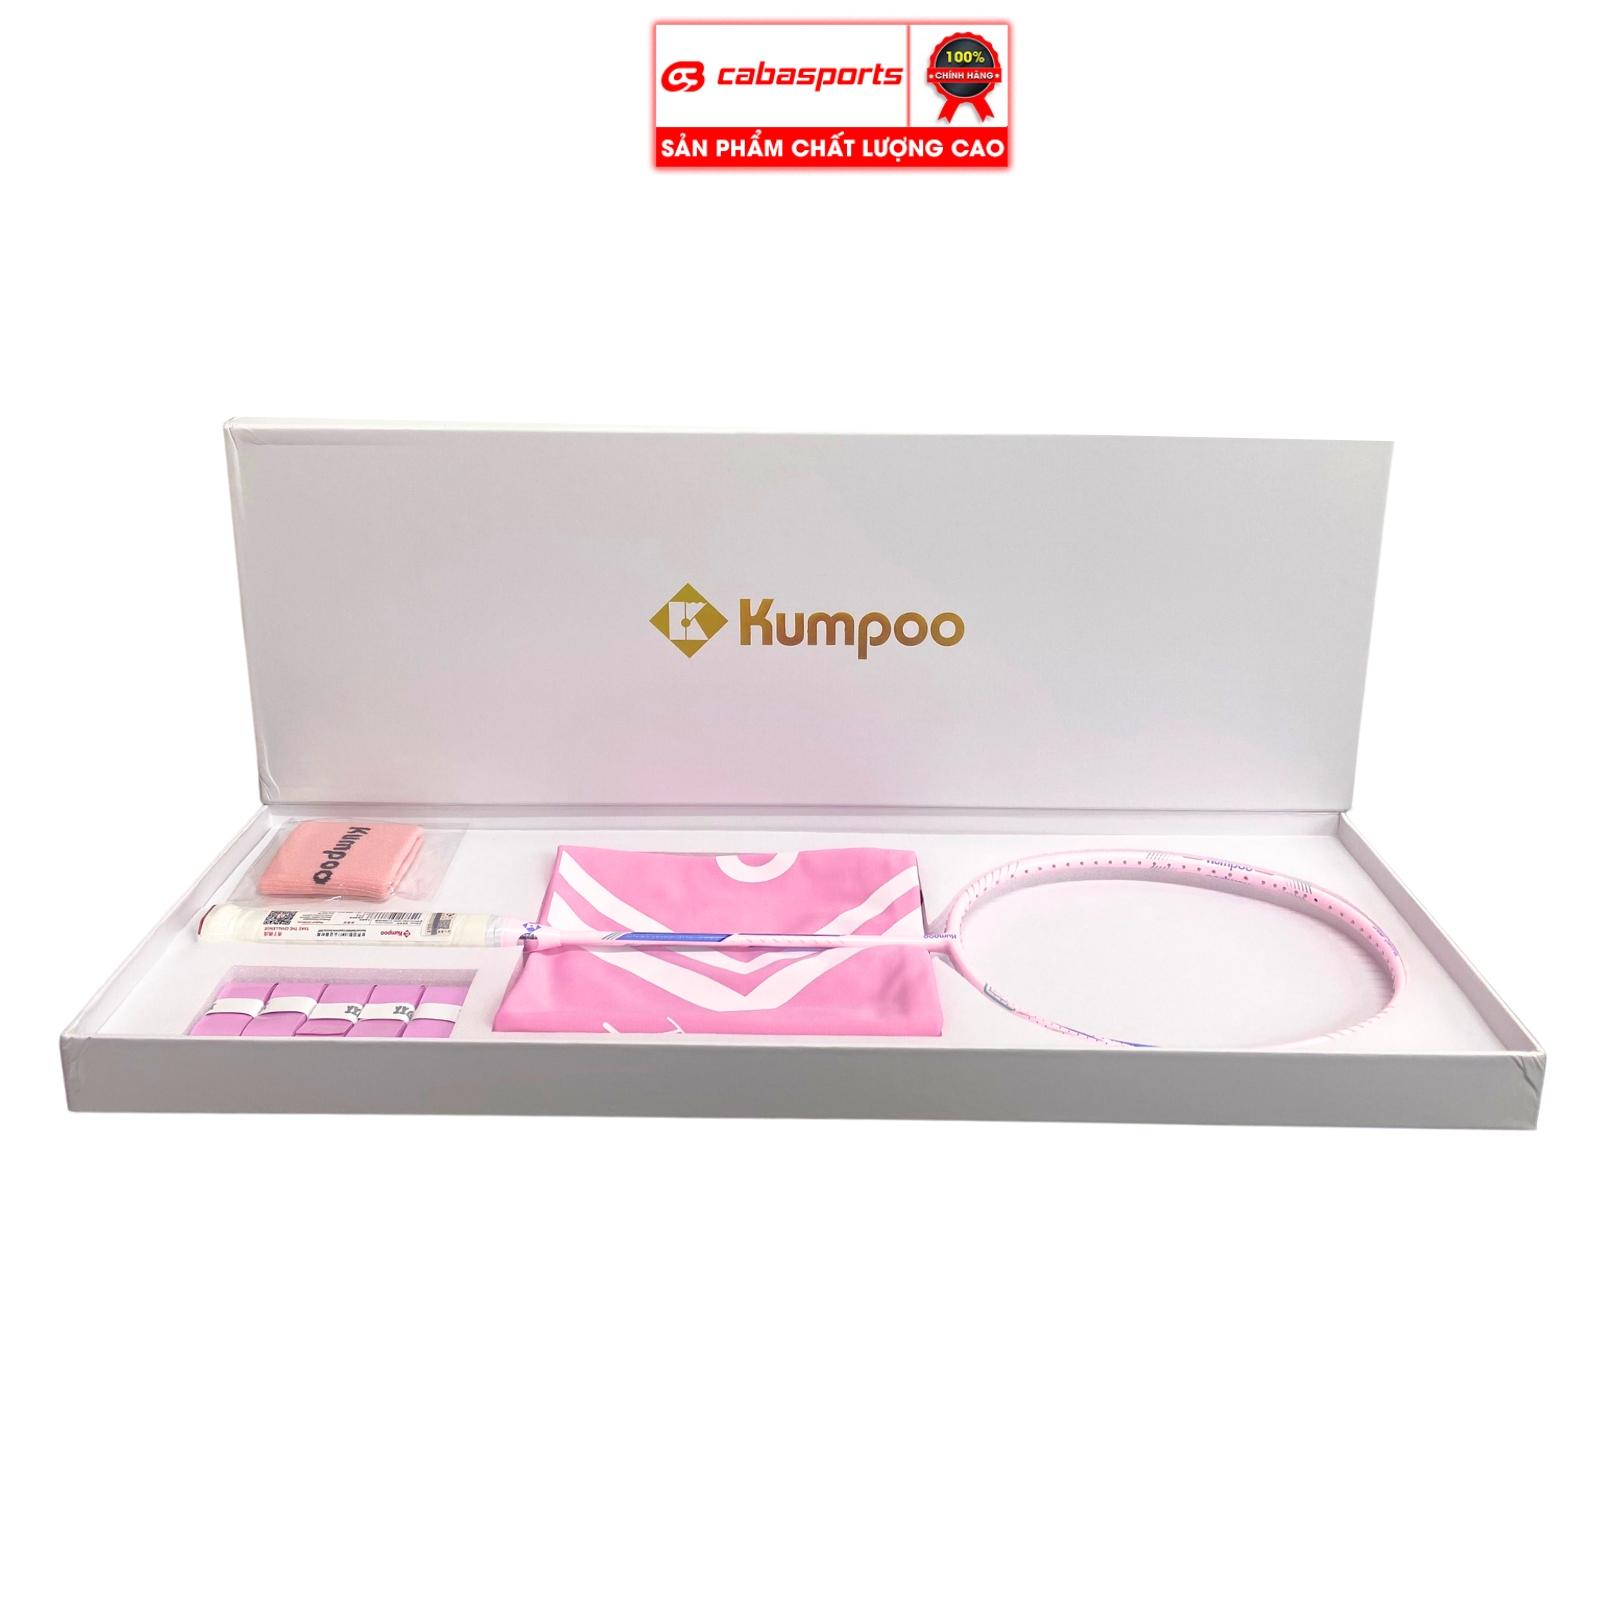 Vợt cầu lông Kumpoo Power Control PC 99 Pro Hồng nguyên hộp đựng cao cấp, vợt Kumpoo chuyên công chất lượng chính hãng kèm quà tặng Hộp vợt và túi vải và quấn cán